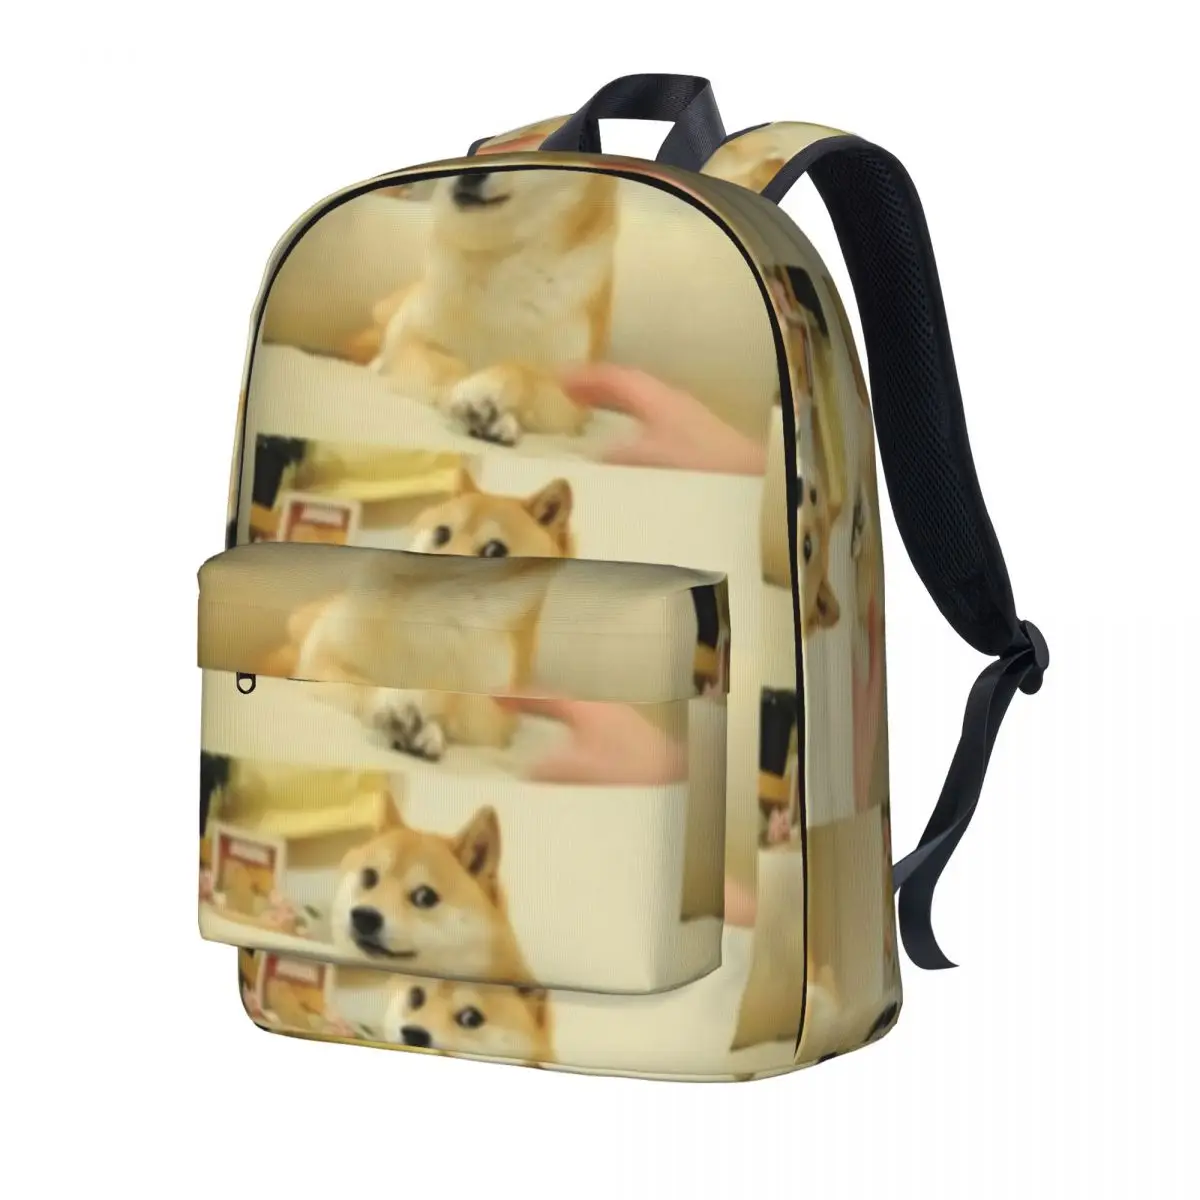 Doge Meme Backpack Shibe Dog Face Daily Backpacks Female Colorful Big High School Bags Cool Rucksack